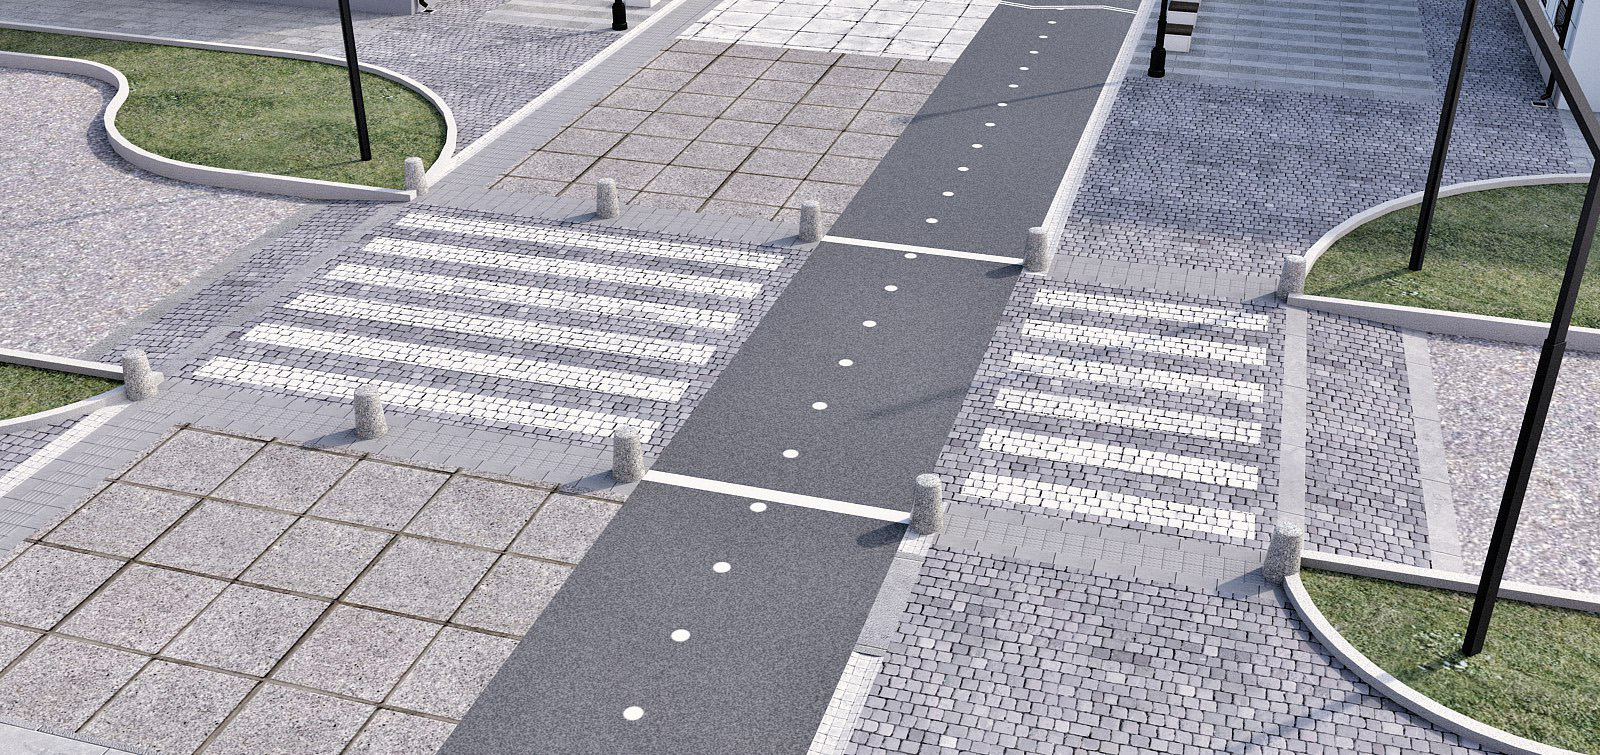 Преимущества использования железобетонных изделий в инфраструктуре городов: дороги, тротуары, остановки общественного транспорта